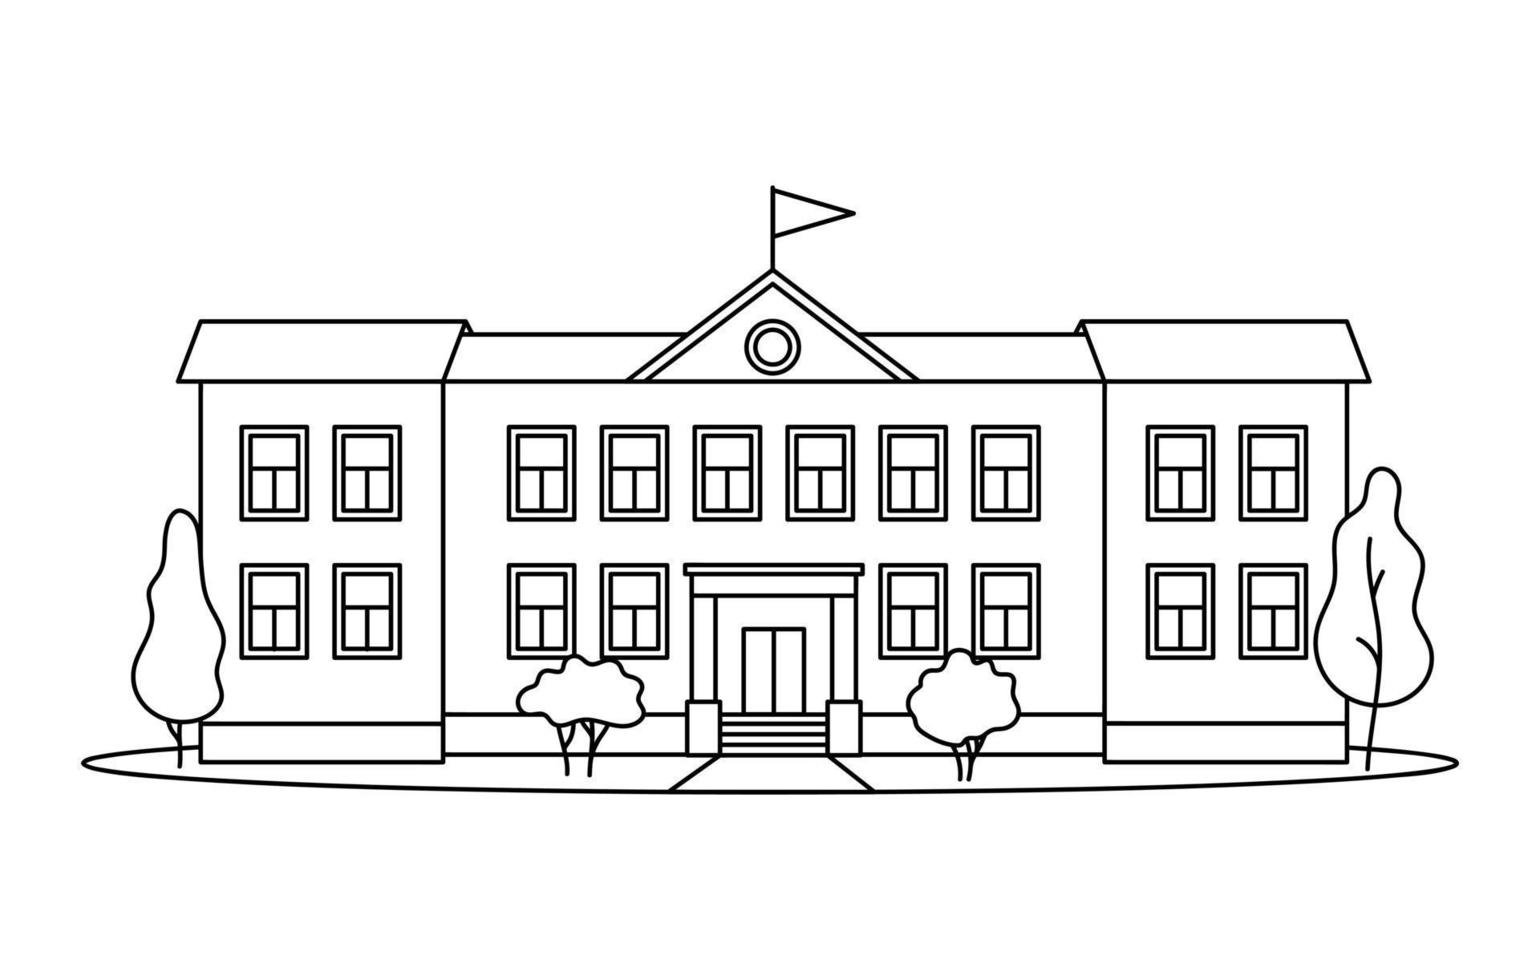 klassisk skolbyggnad med kolumner för barn eller elev ritade med kontursvarta linjer på vit bakgrund. vektor